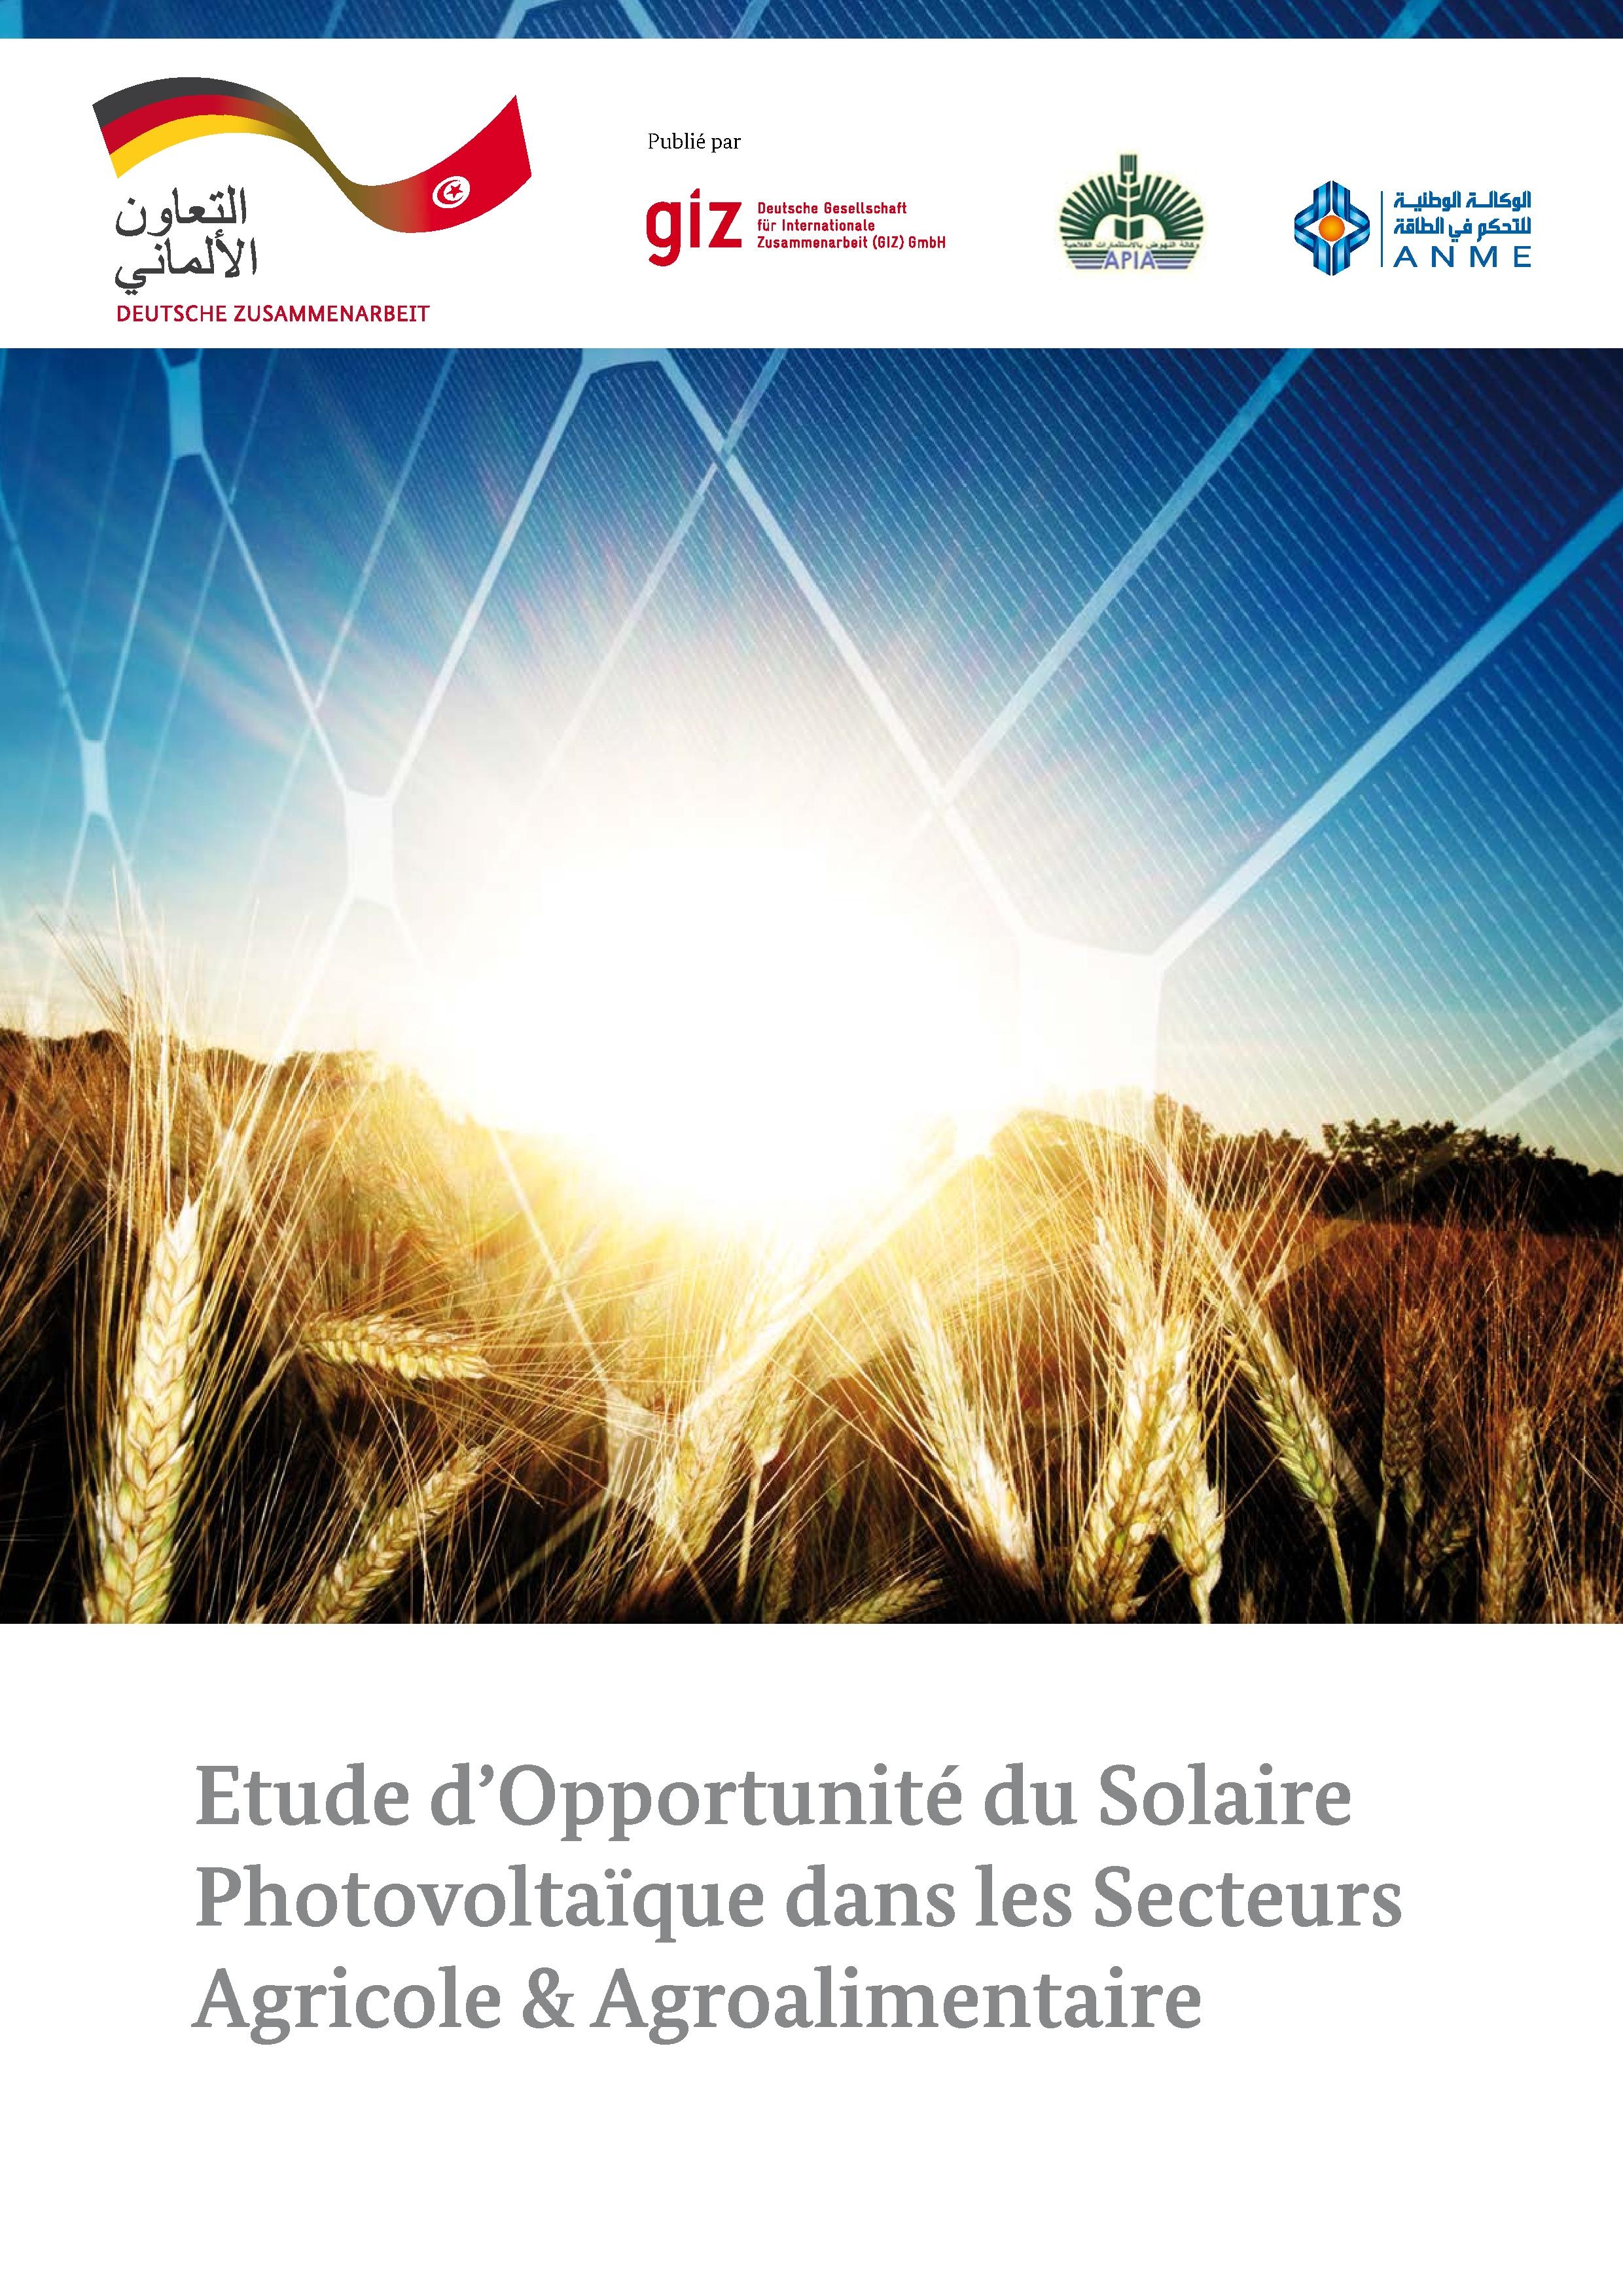 Etude d’Opportunité du Solaire Photovoltaïque dans les Secteurs Agricole & Agroalimentaire